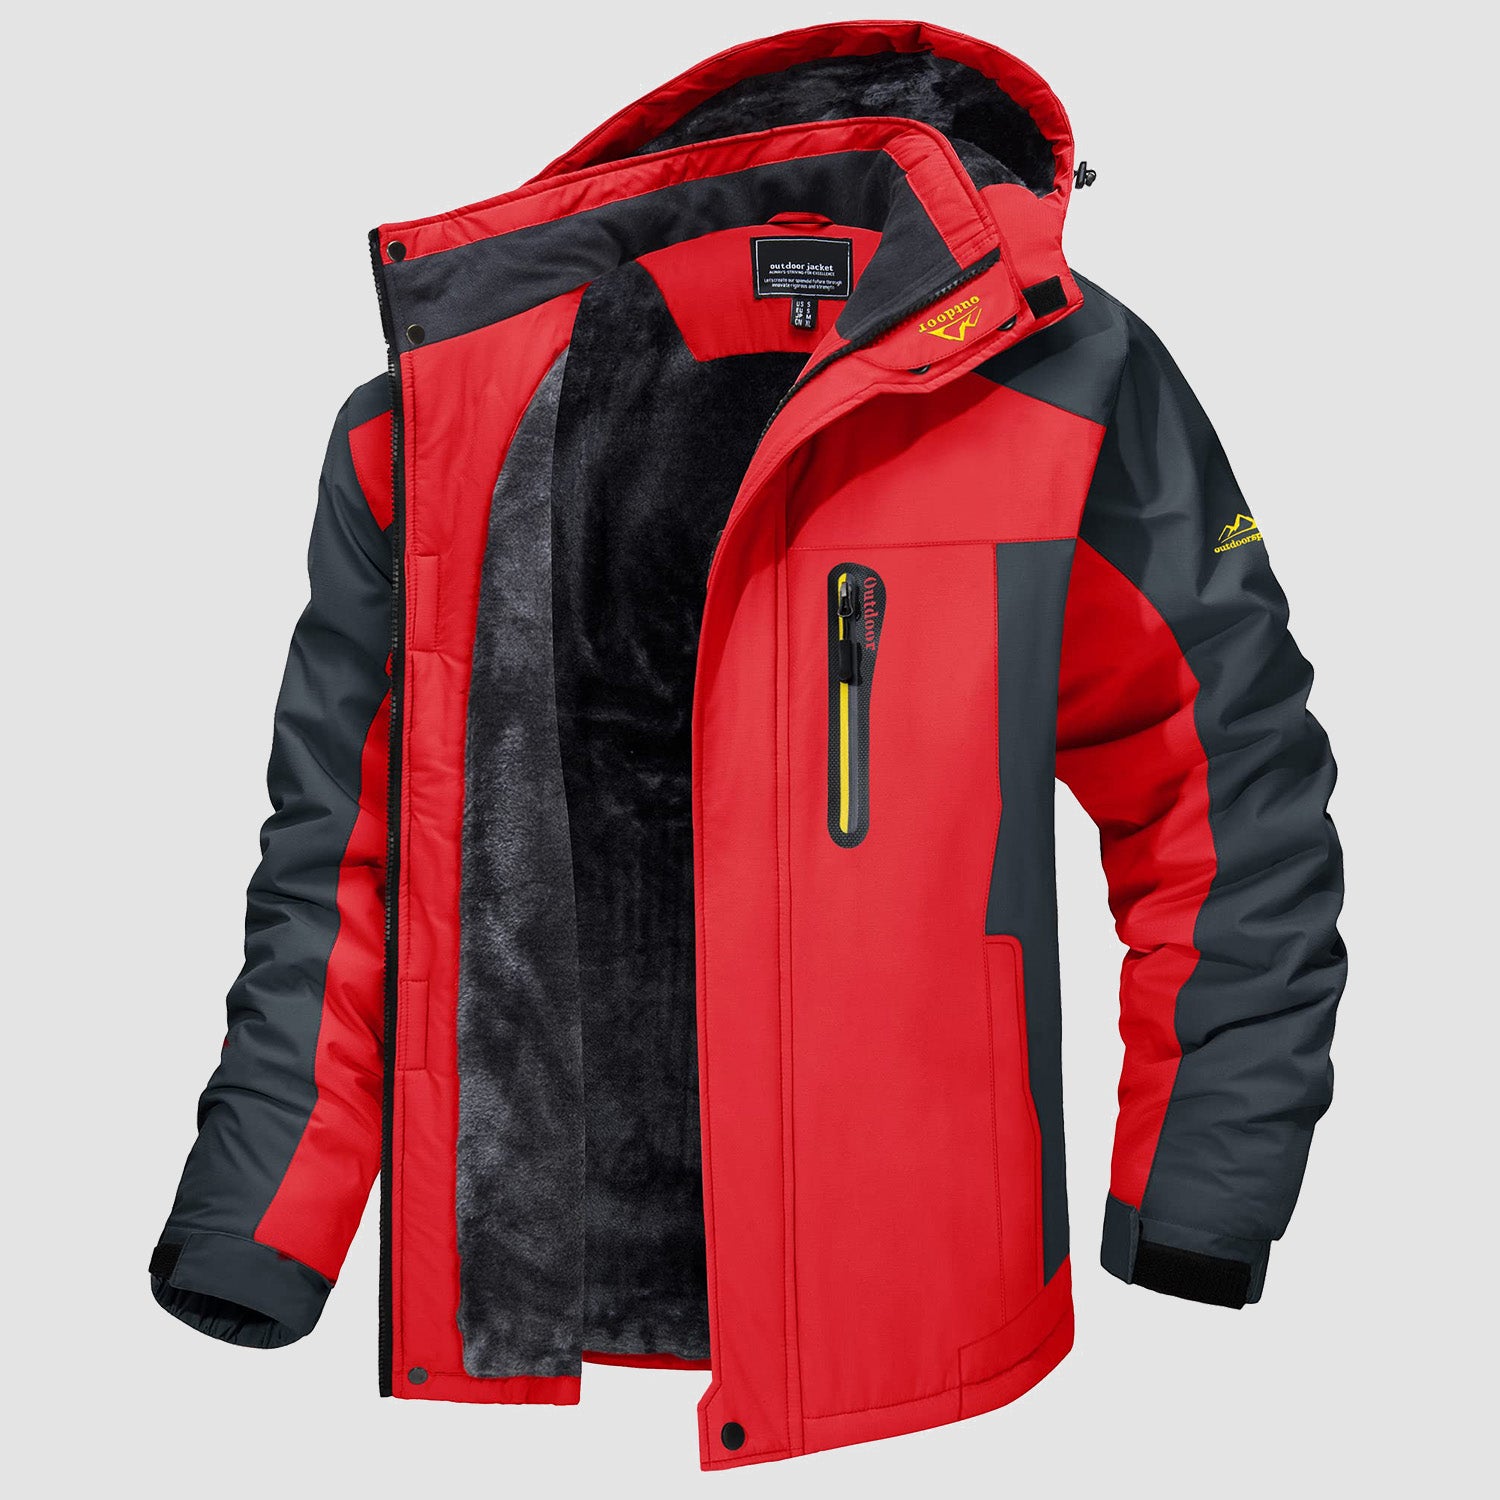 Men's Fleece Lined Parka Coats Water Resistant Snow Ski Winter Jacket